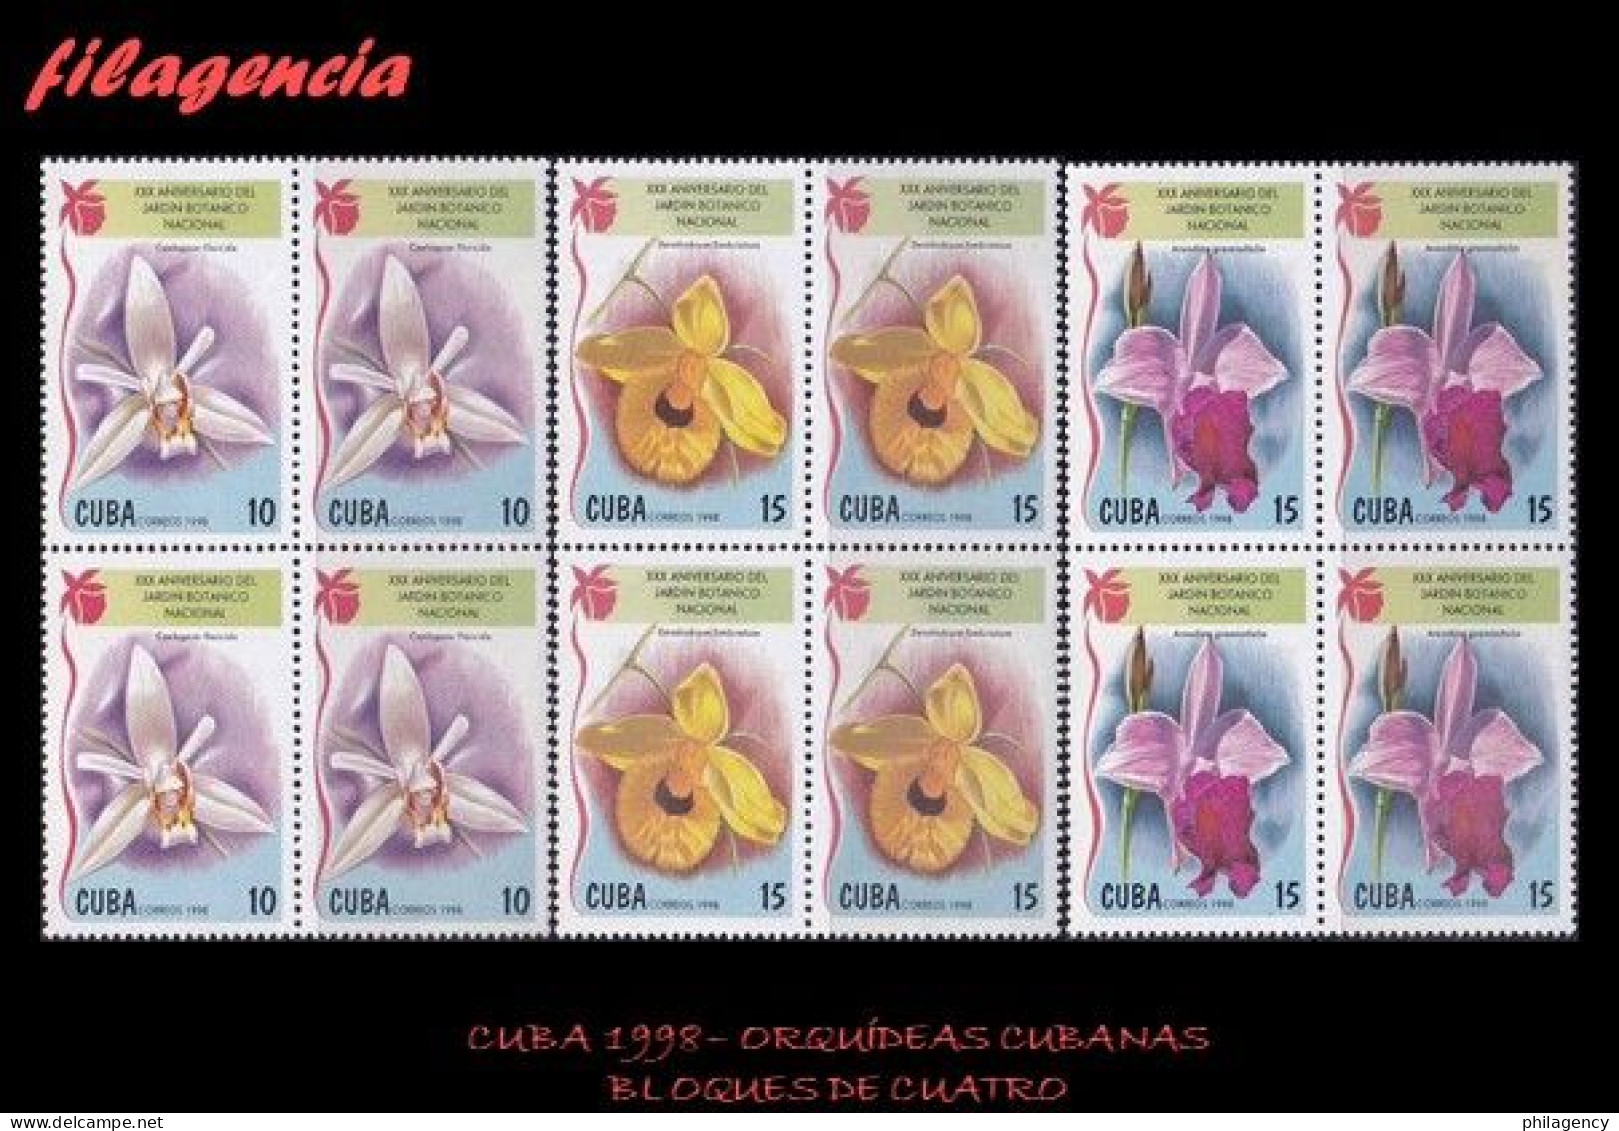 CUBA. BLOQUES DE CUATRO. 1998-23 FLORA. ORQUÍDEAS CUBANAS - Ongebruikt